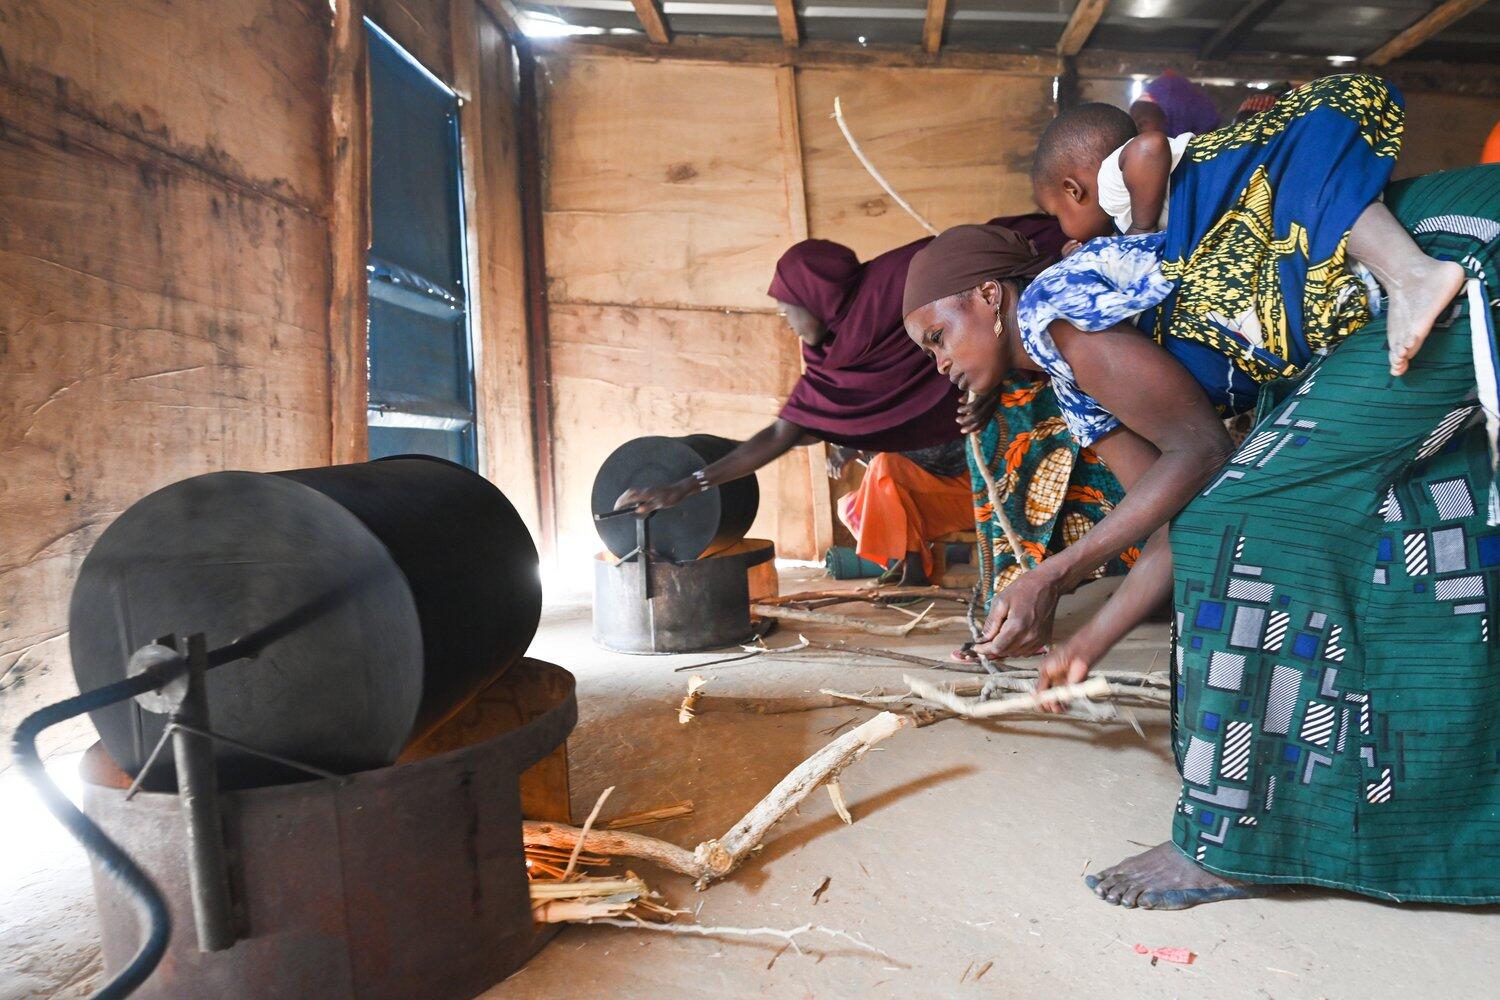 Deux femmes font griller des arachides dans des poêles à bois